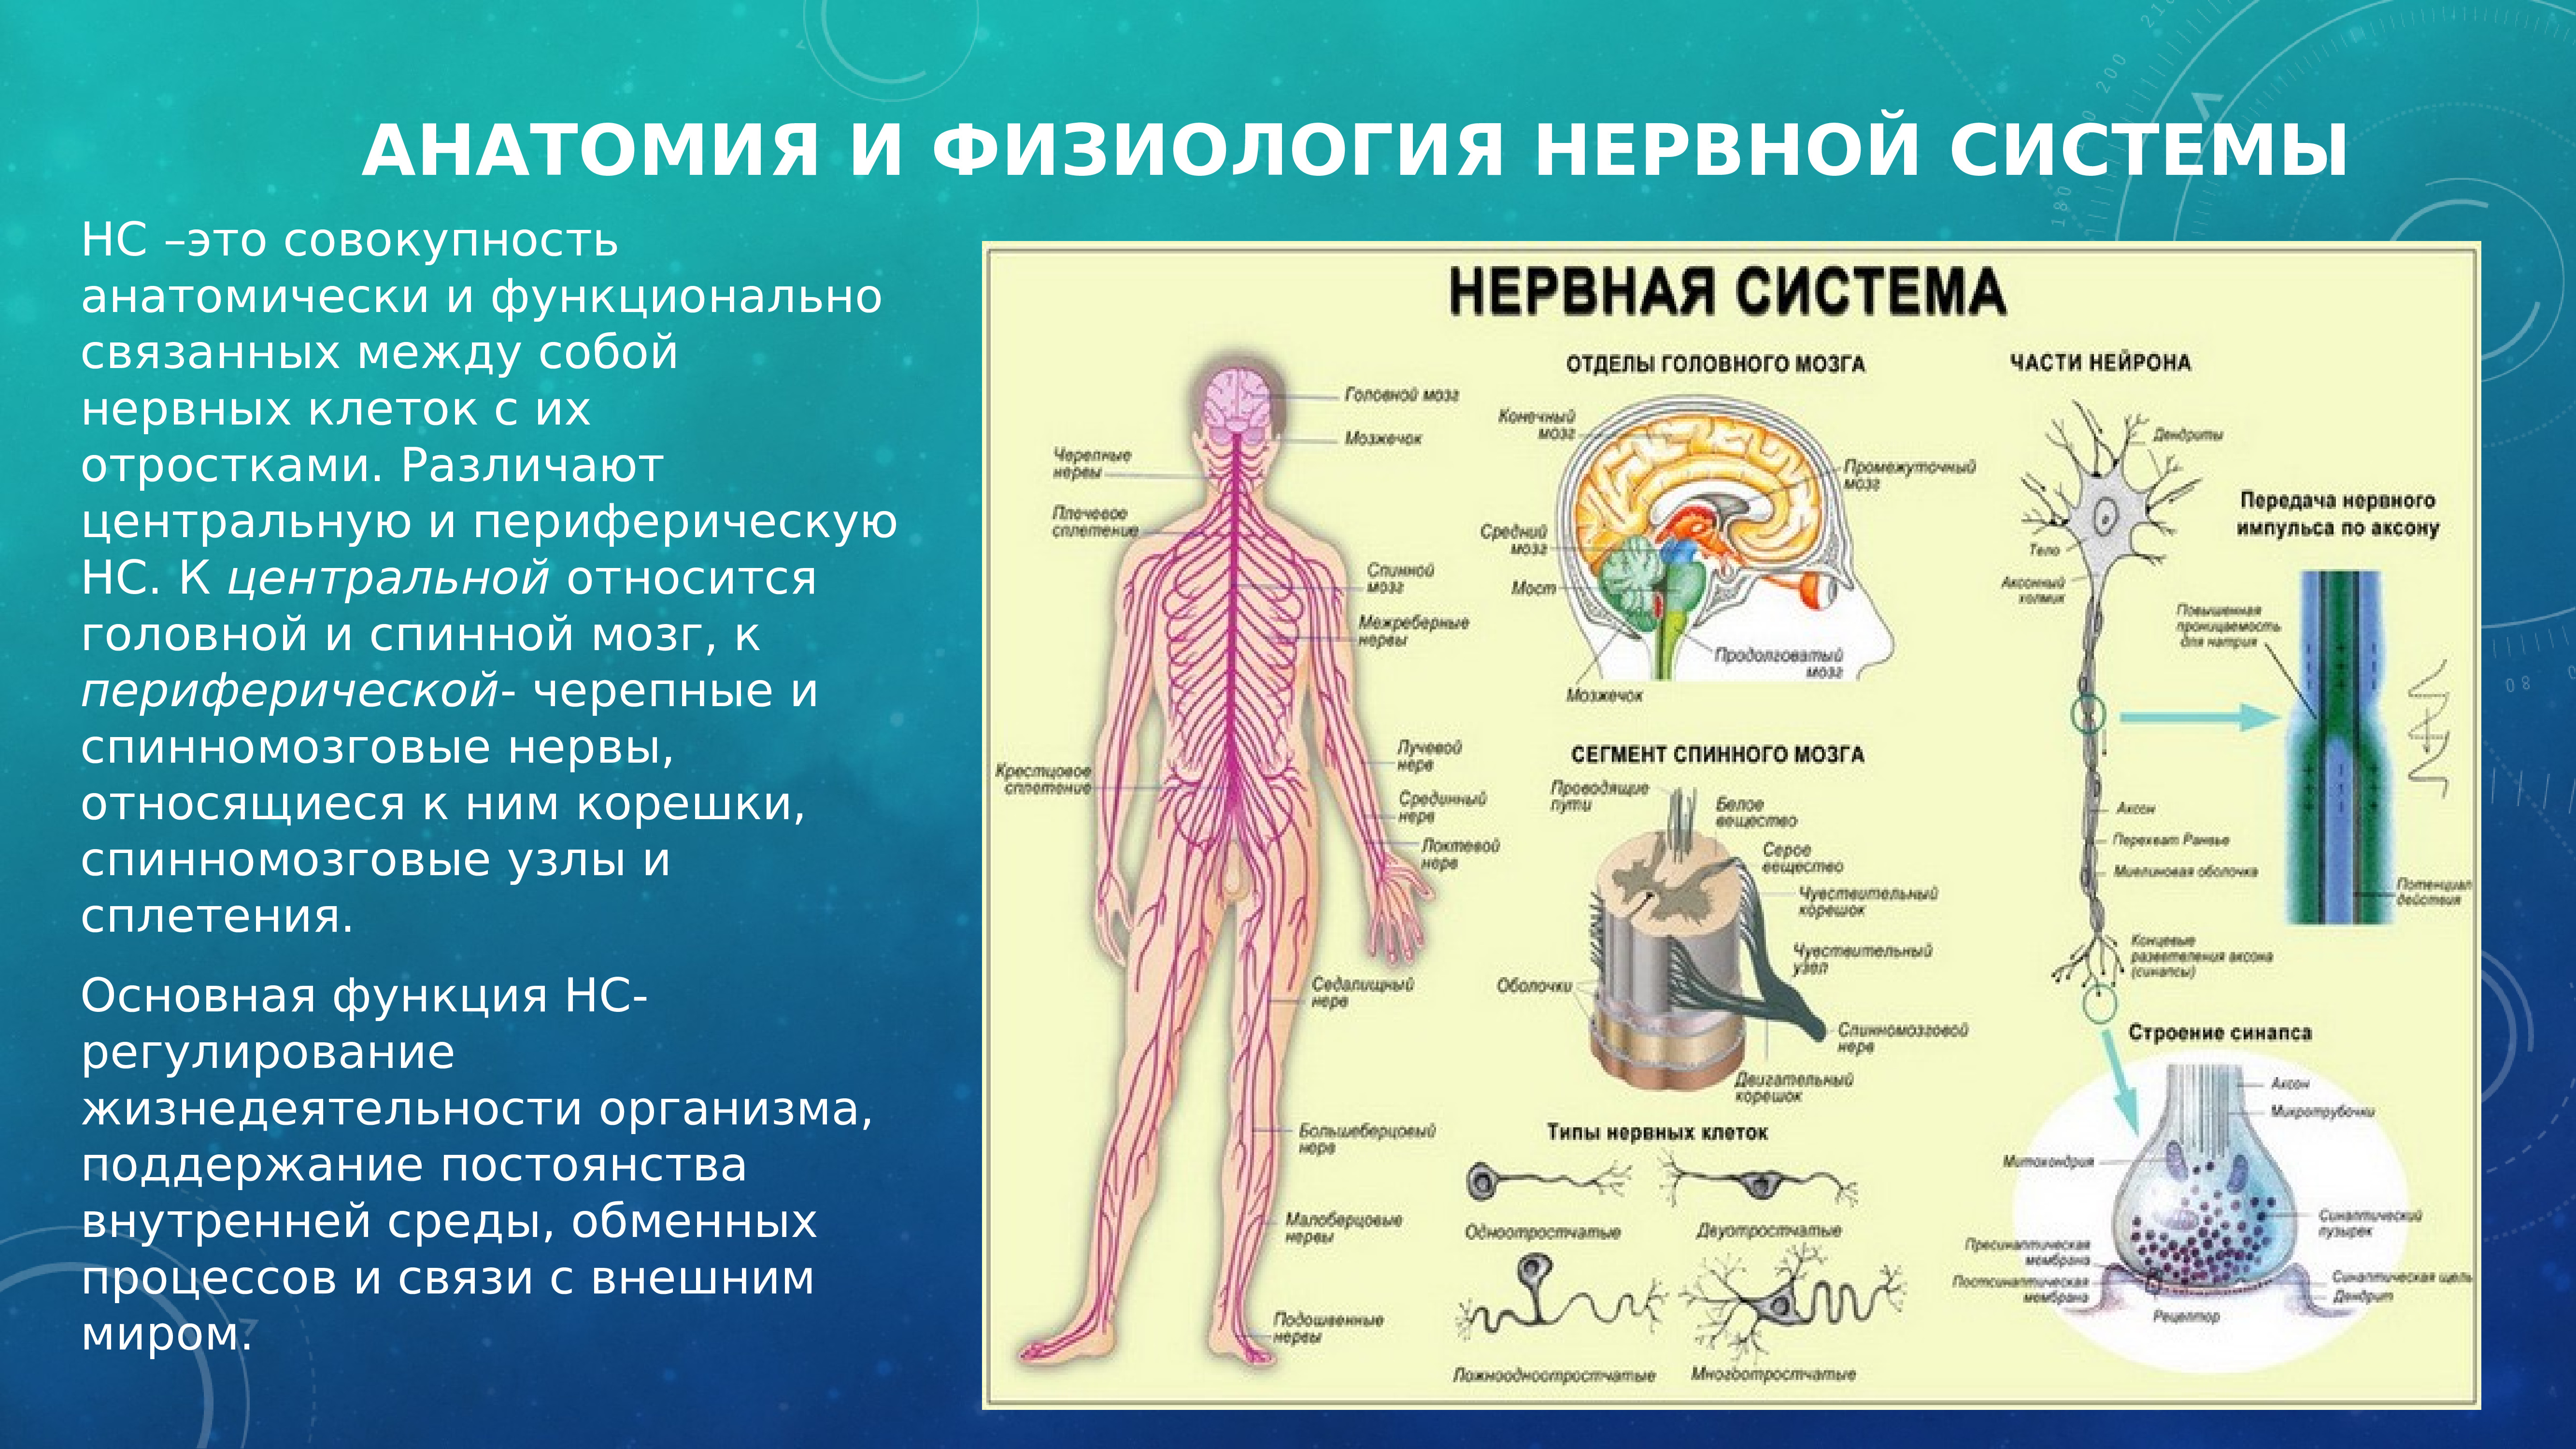 Укажите название органа периферической нервной системы человека. Анатомия и физиология нервной системы. Разделение нервной системы на центральную и периферическую. Нервная система человека делится на центральную и периферическую. ЦНС И ПНС анатомия и физиология человека.